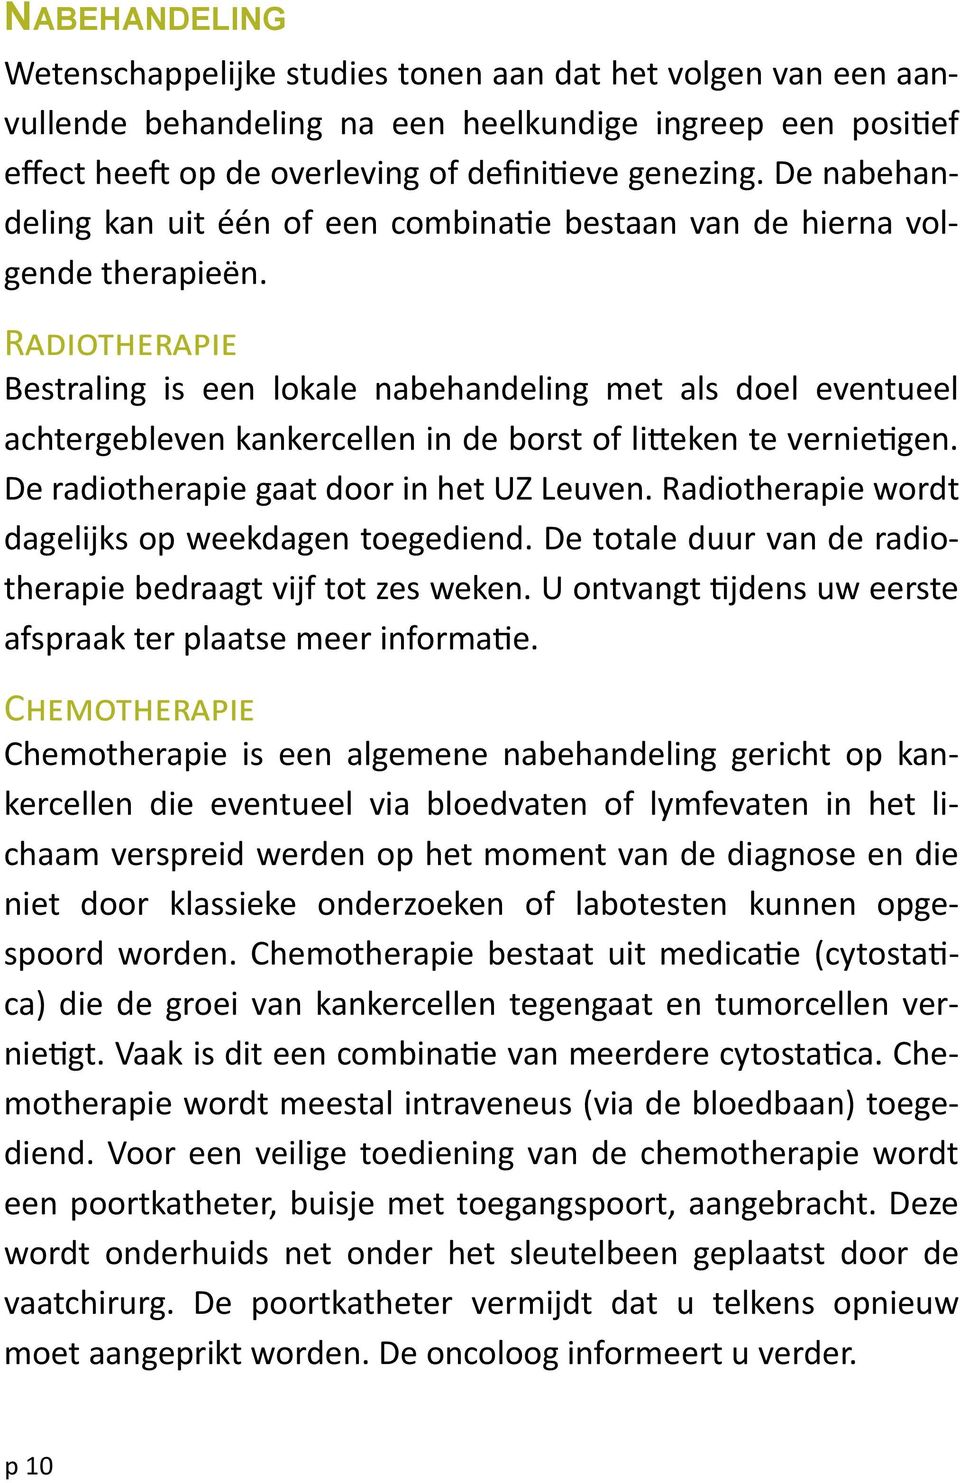 Radiotherapie Bestraling is een lokale nabehandeling met als doel eventueel achtergebleven kankercellen in de borst of litteken te vernietigen. De radiotherapie gaat door in het UZ Leuven.